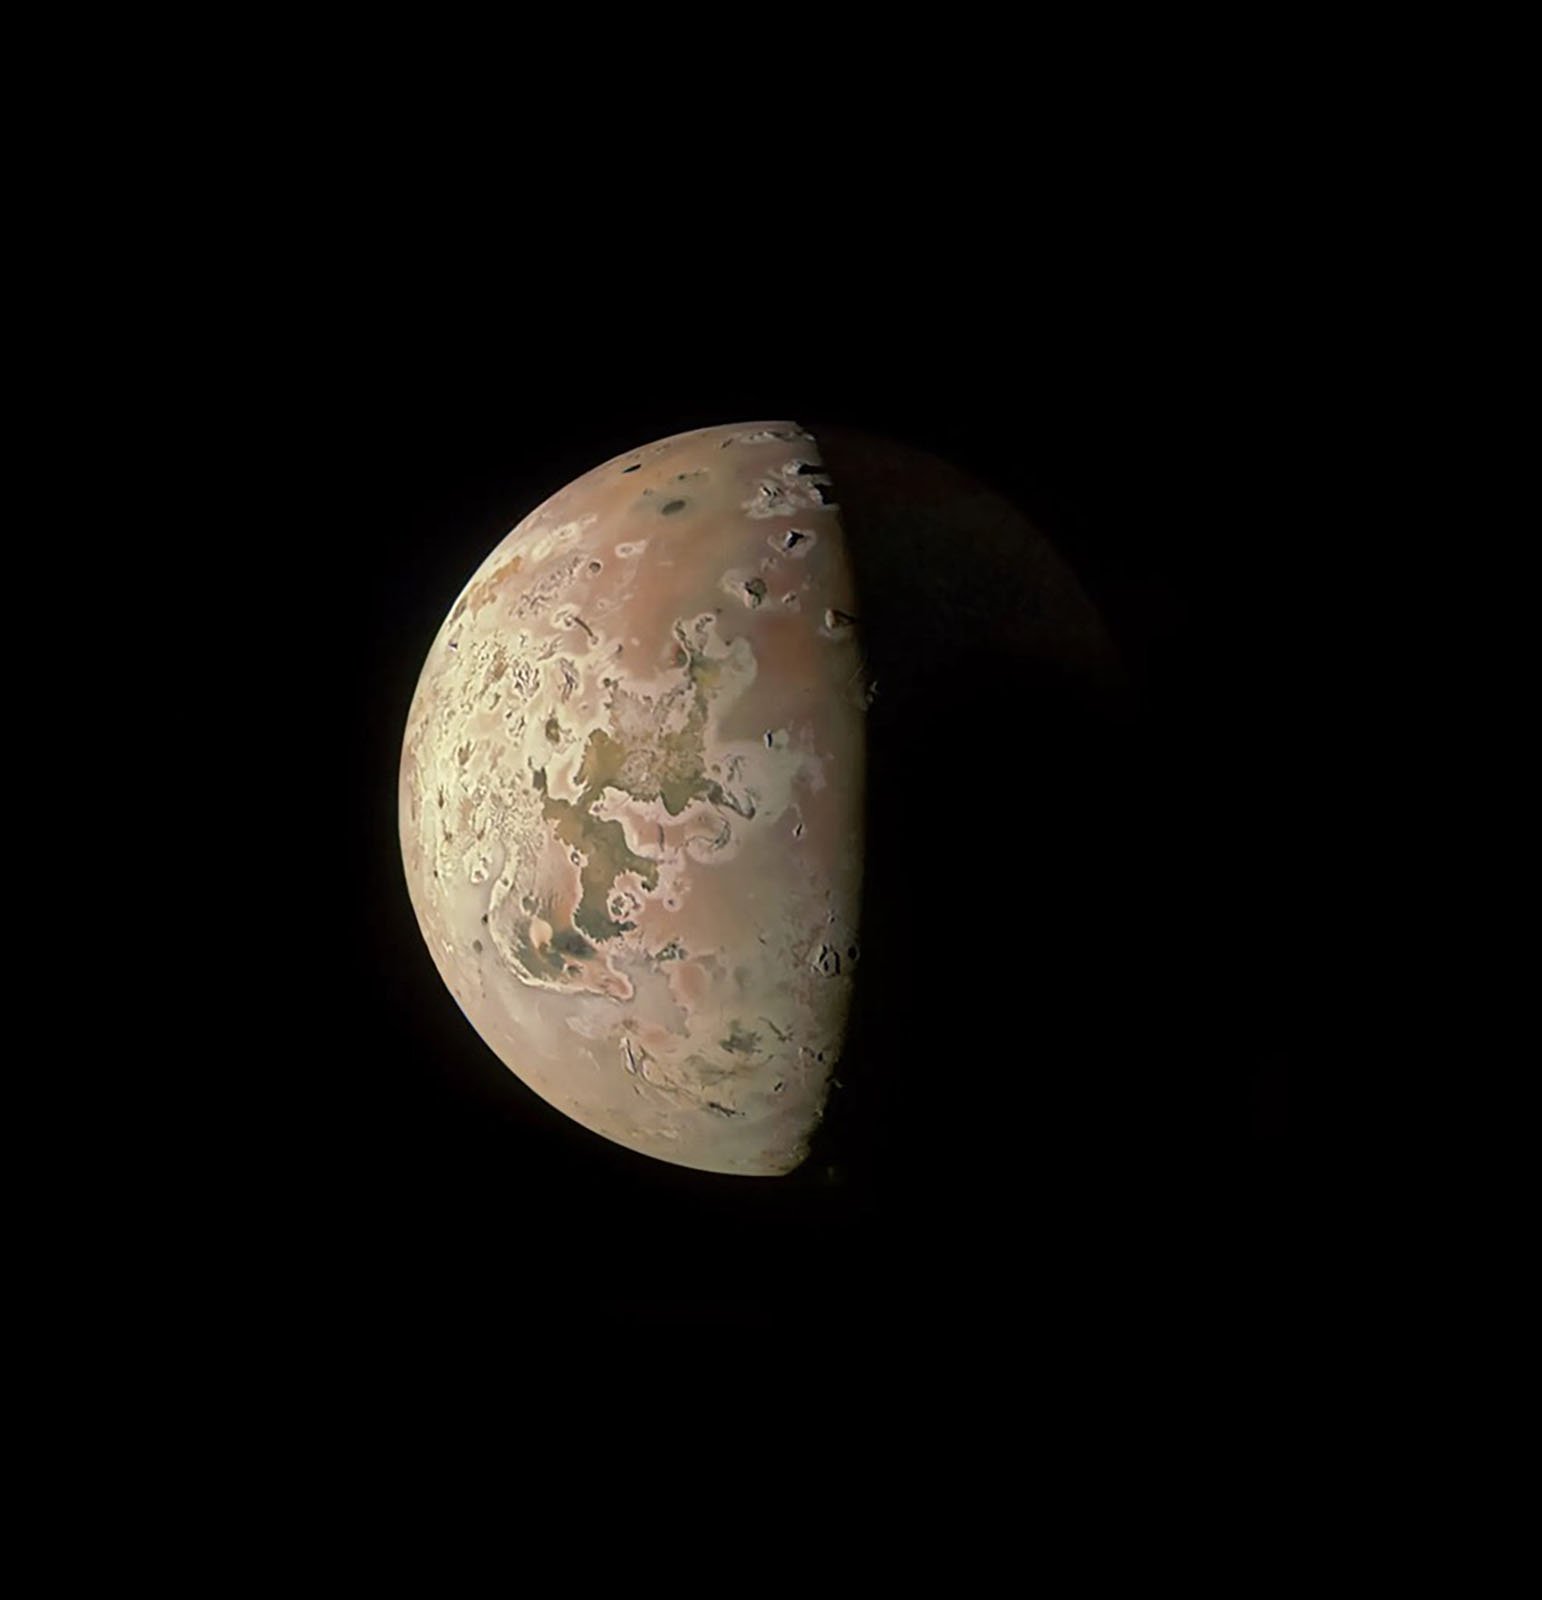 Survol du vaisseau spatial Juno Io